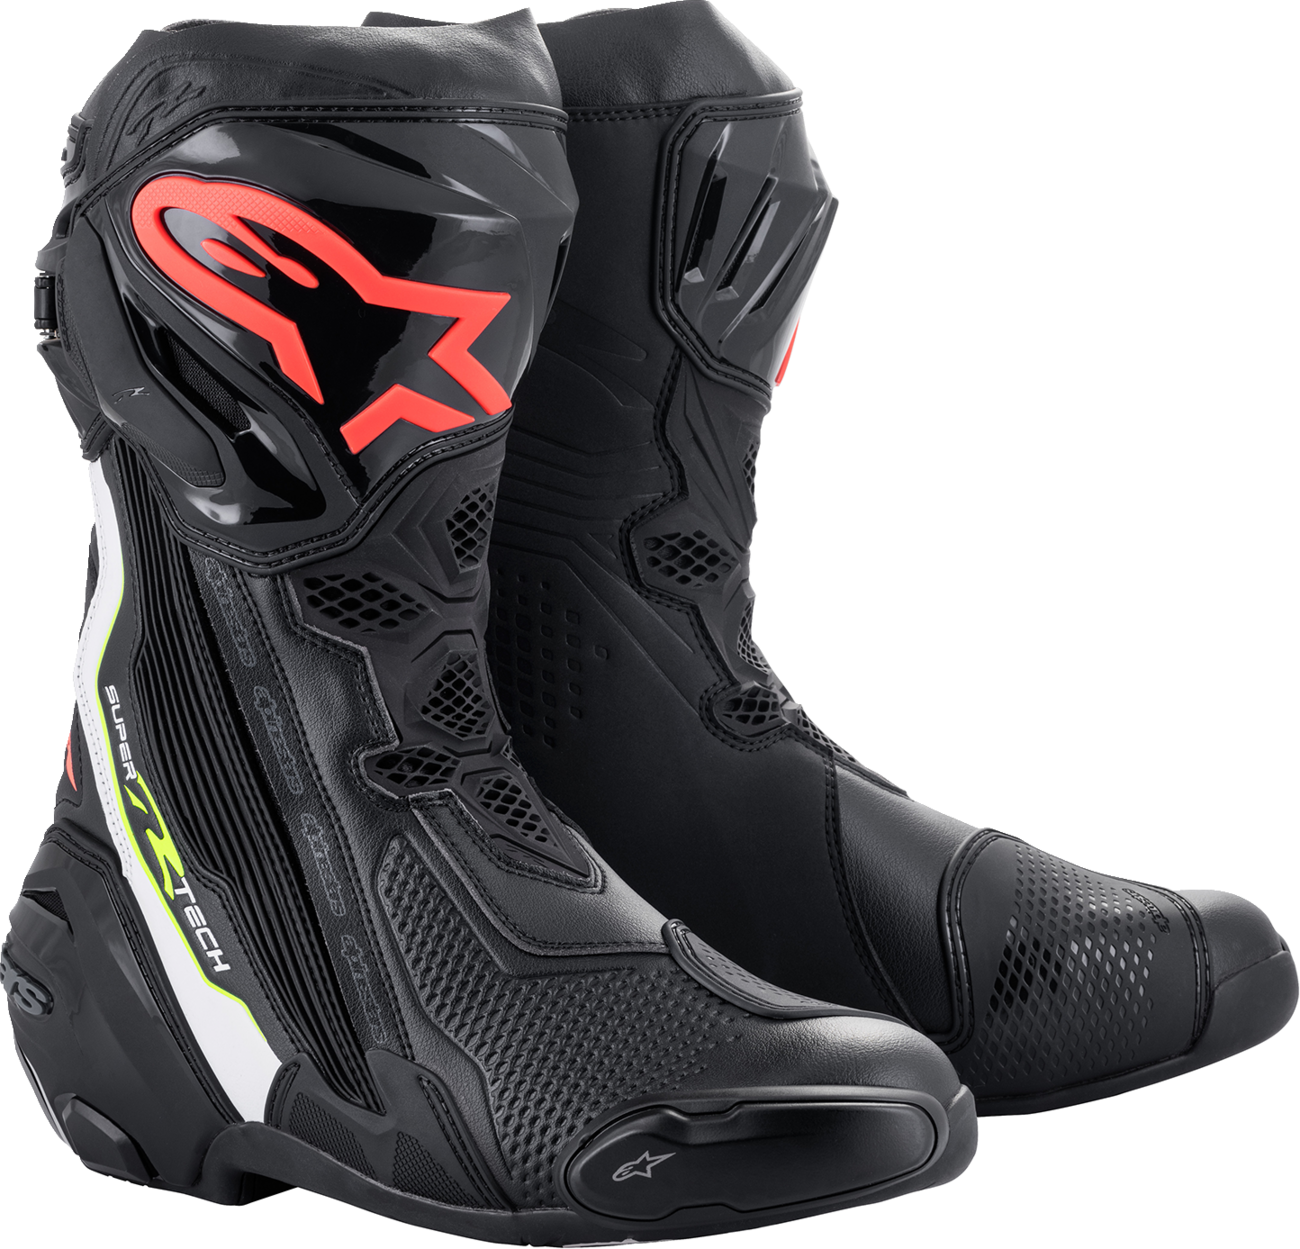 ALPINESTARS Supertech R Boots - Black/Red - US 12 / EU 47 2220021-1236-47